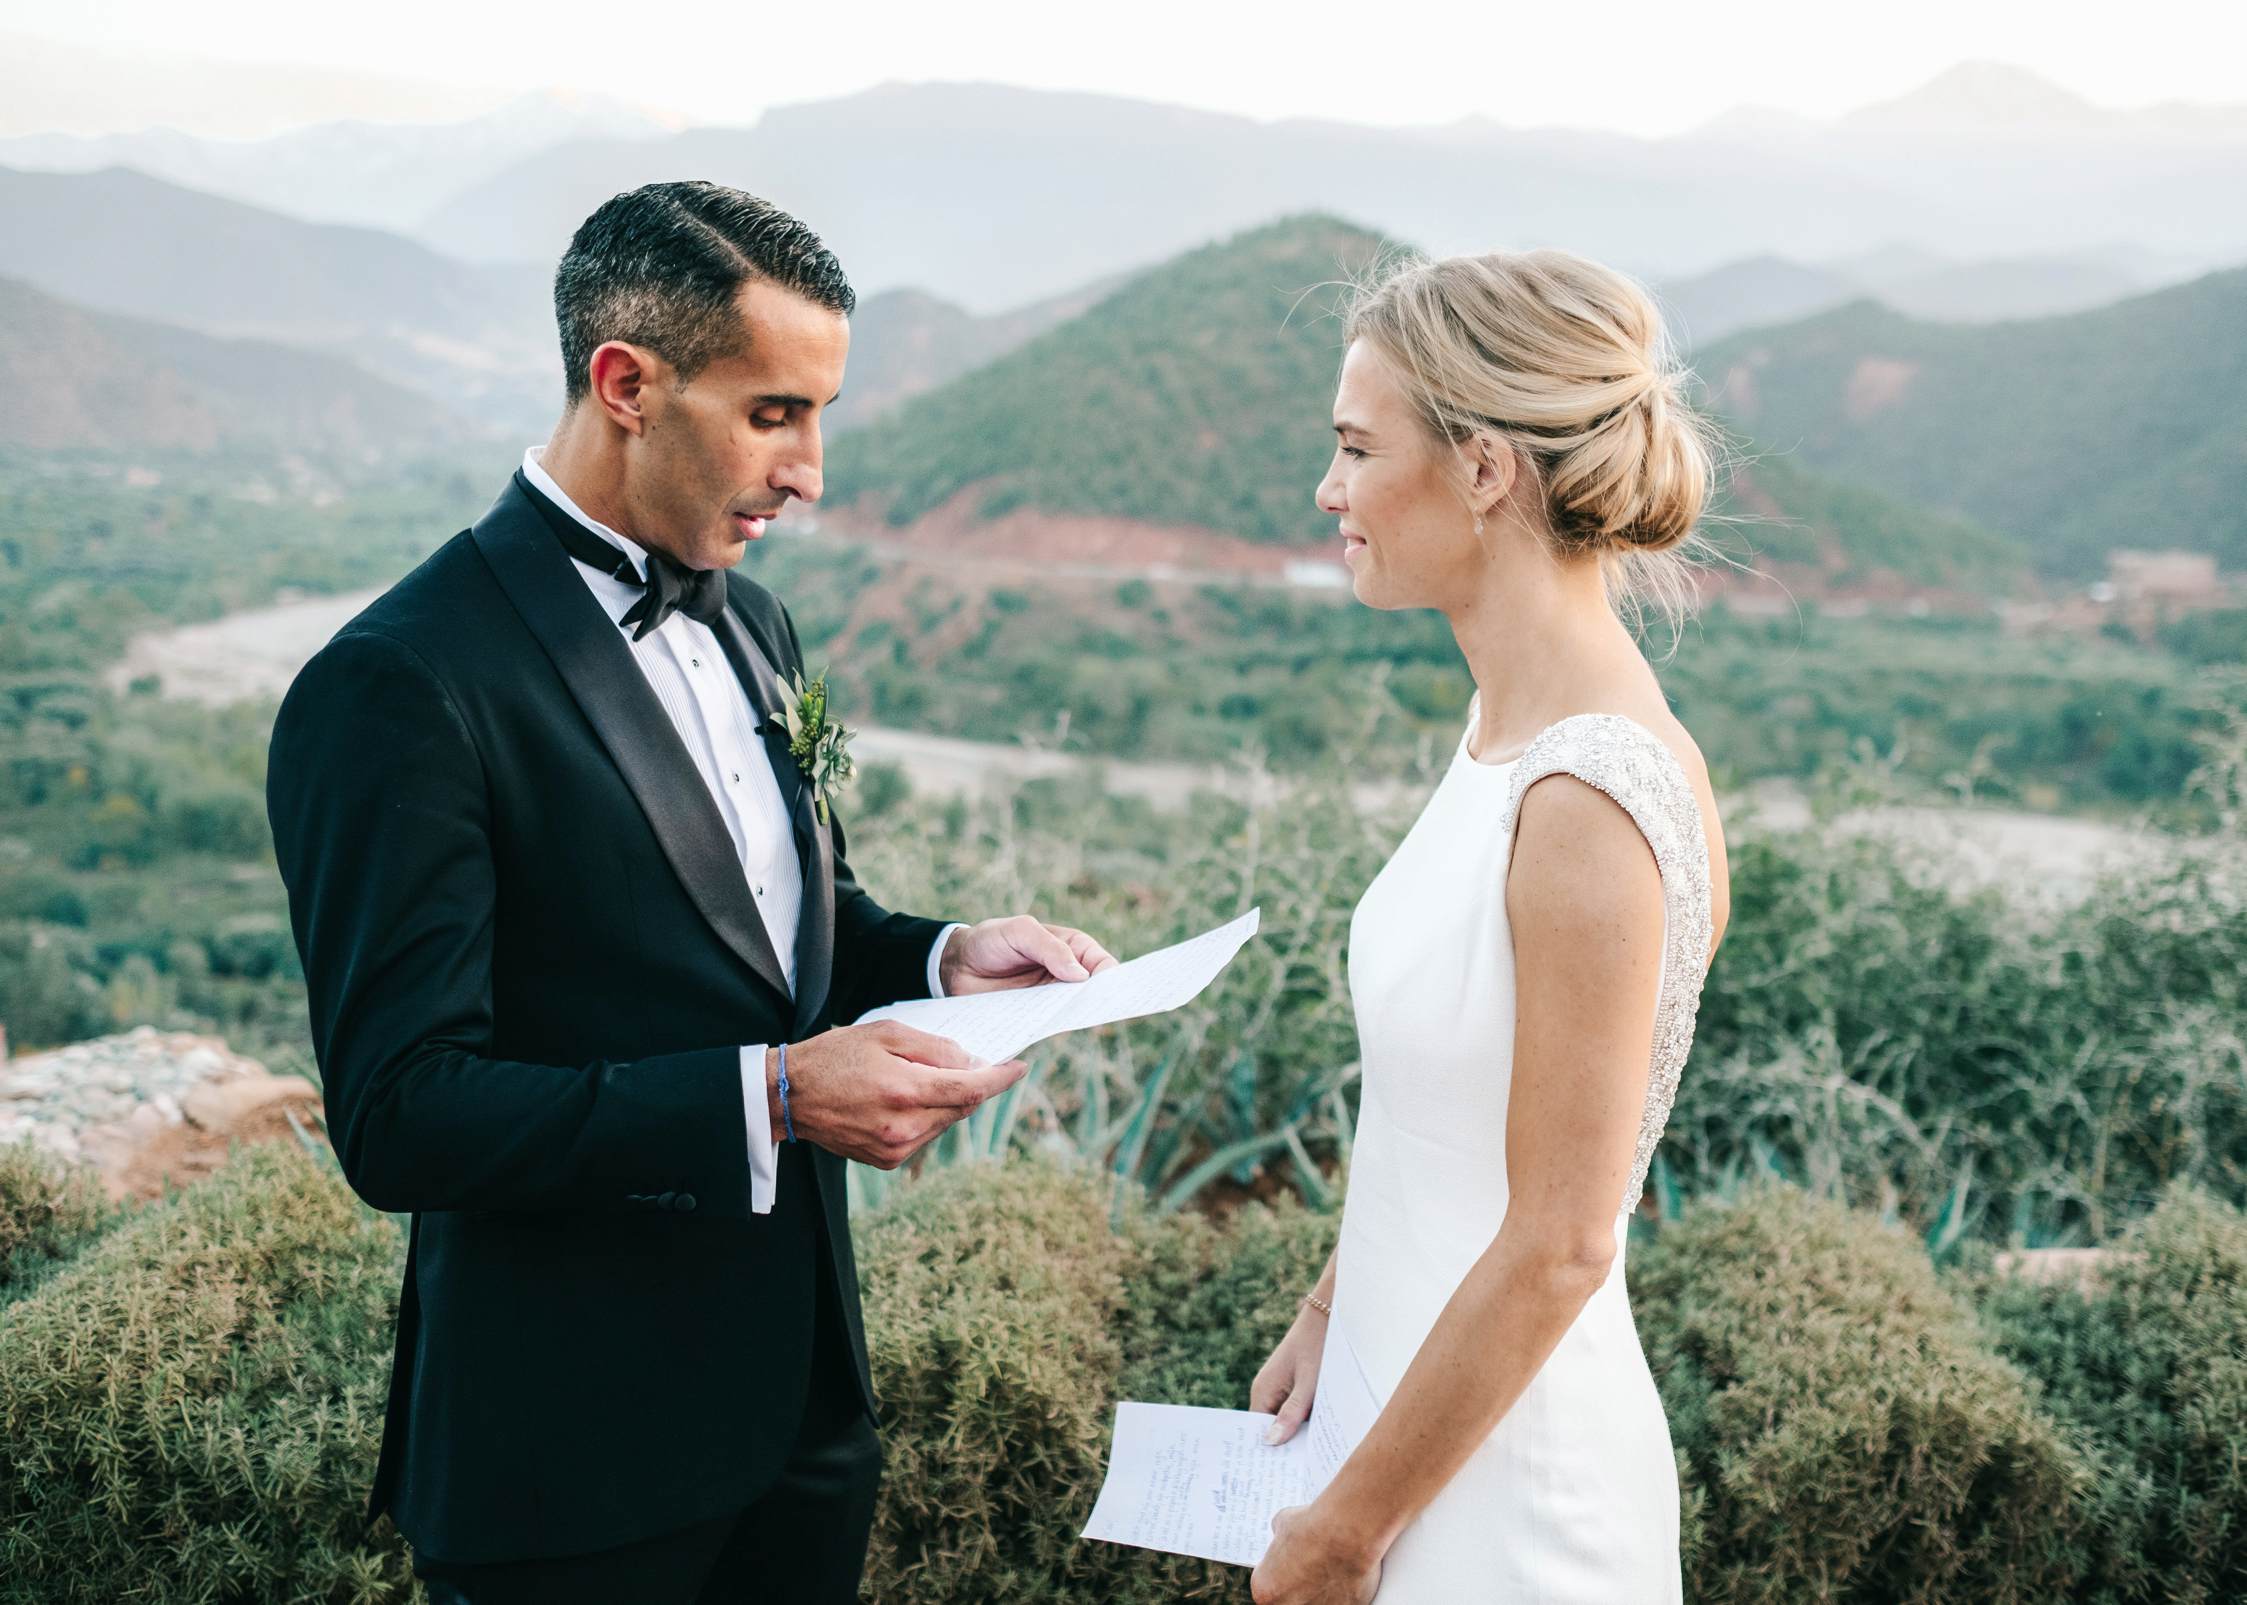 Wedding photographer Marrakech Morocco - Wedding vows